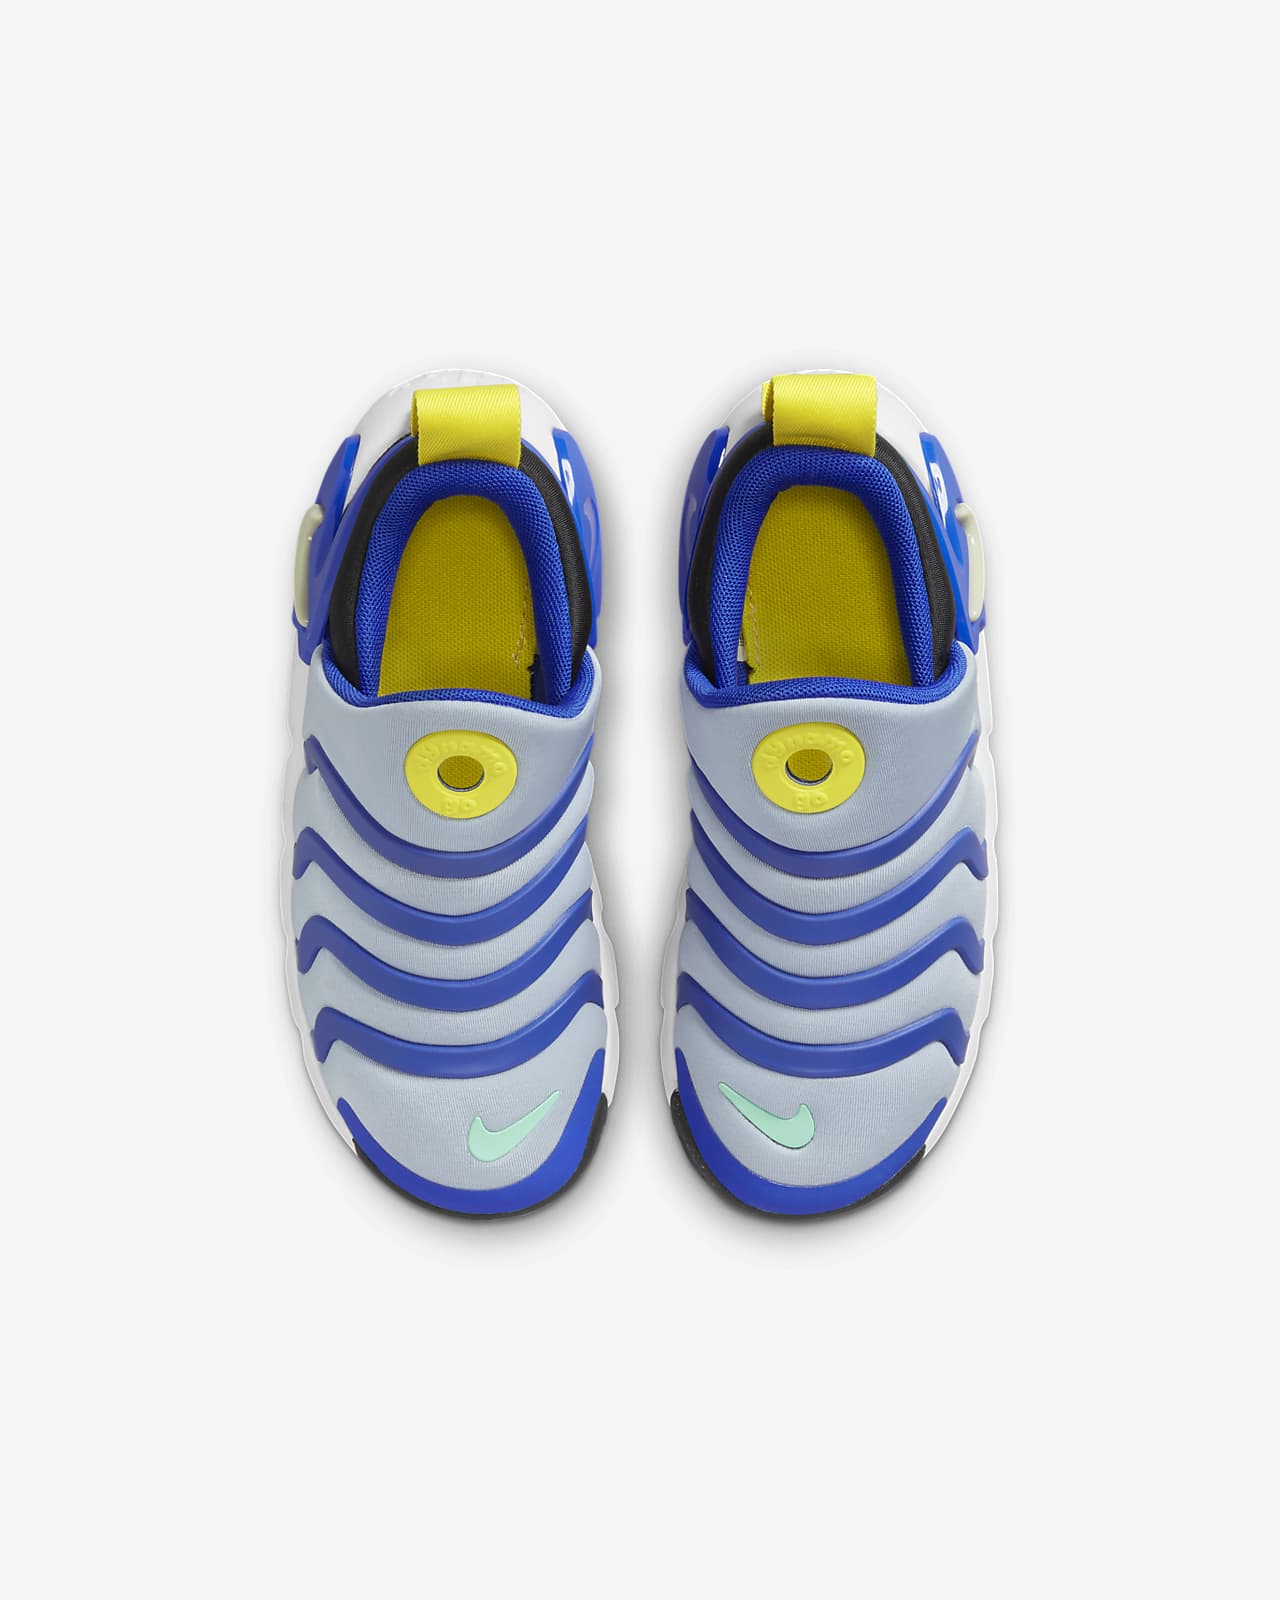 Nike Dynamo Go Little Kids' Easy On/Off Shoes.